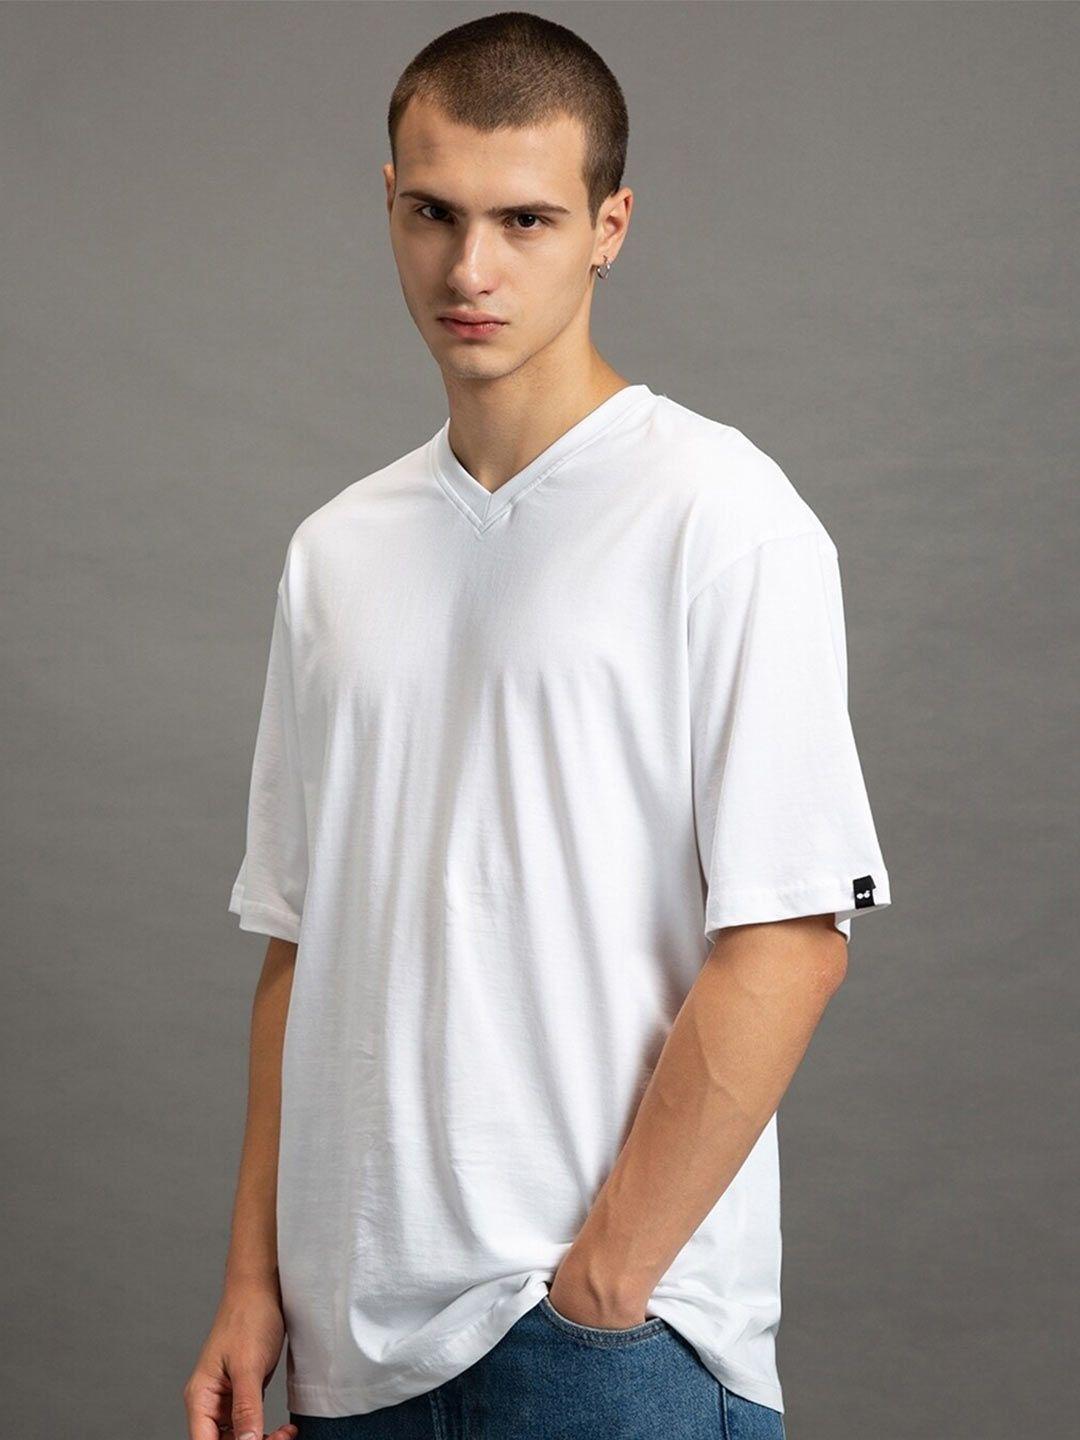 bewakoof men white v-neck pockets t-shirt